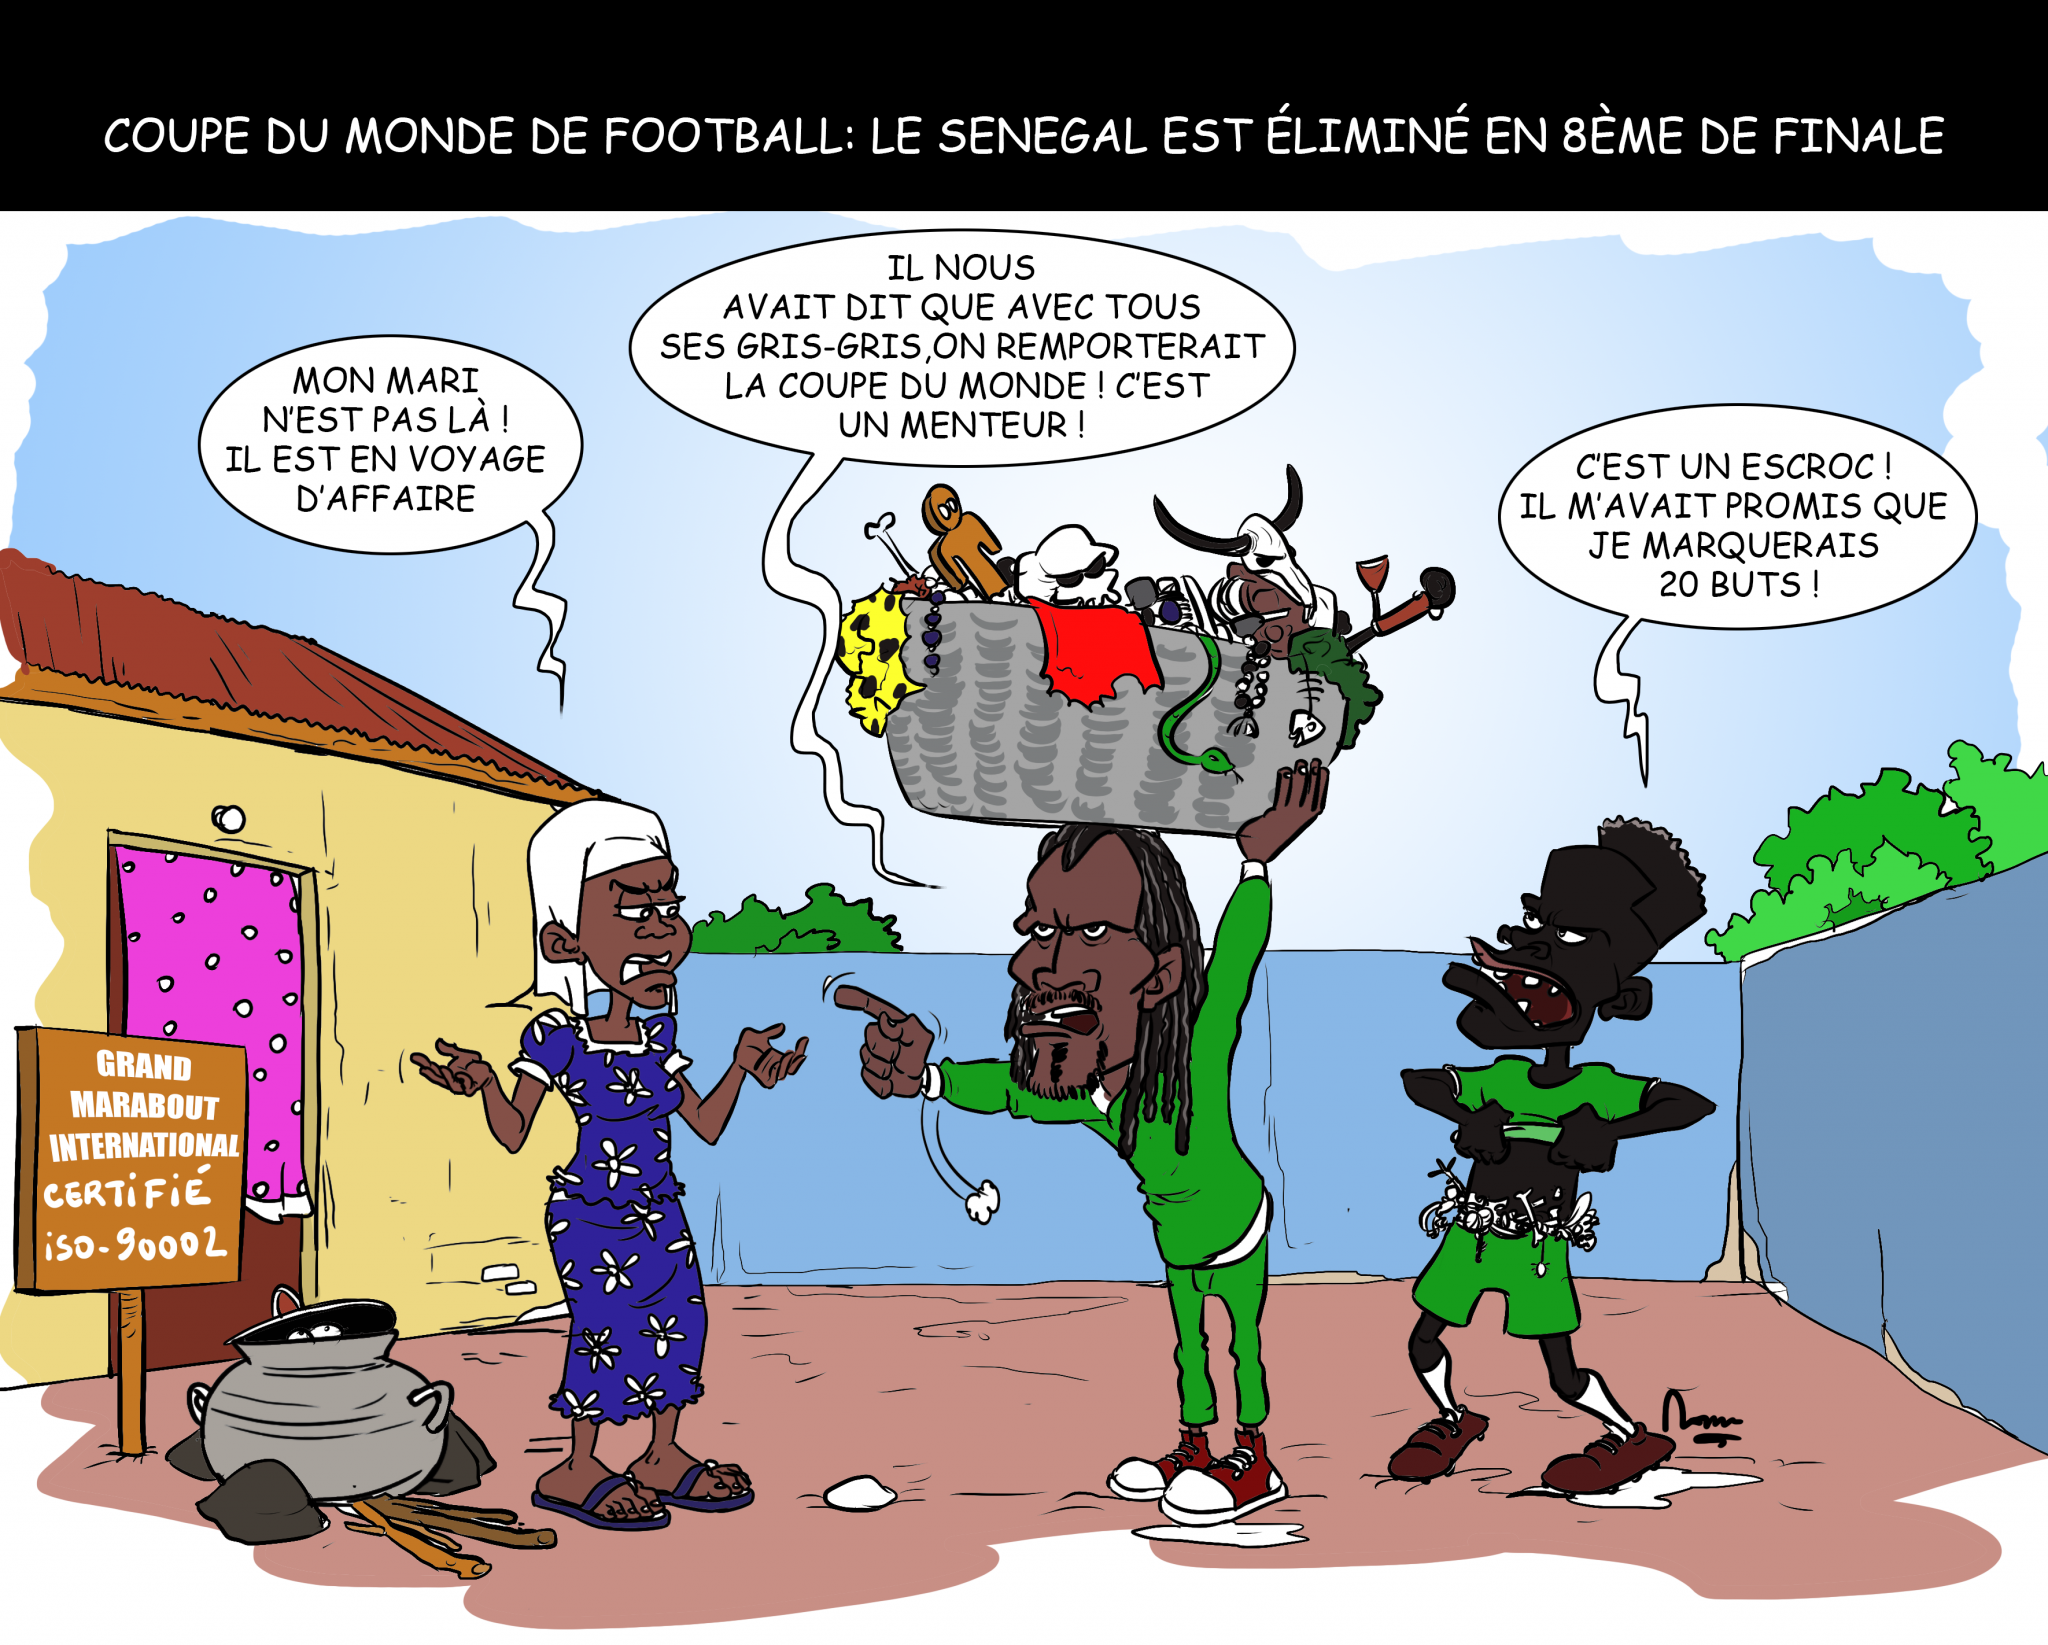 coupe du monde#lions terenga#senegal# Three lions#Quarts de finale#